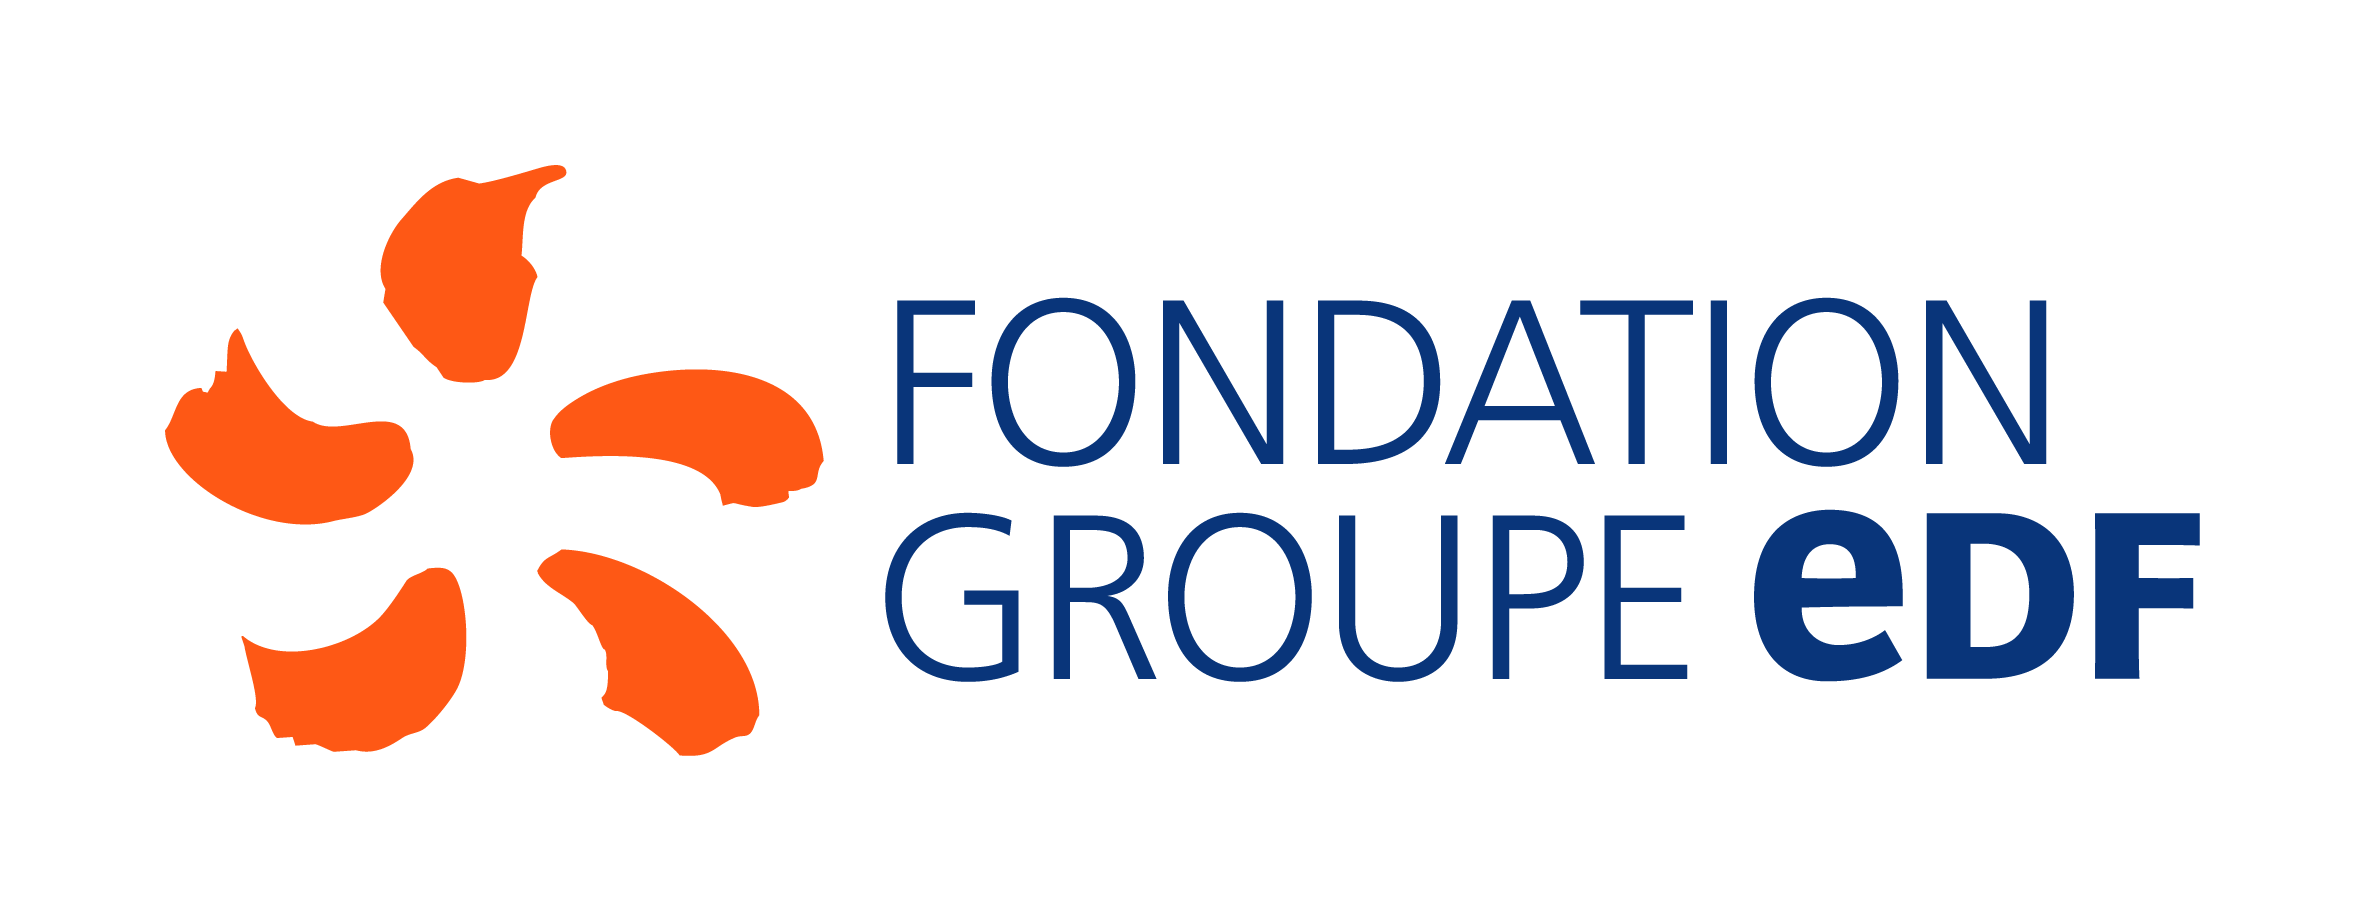 La Fondation Groupe EDF